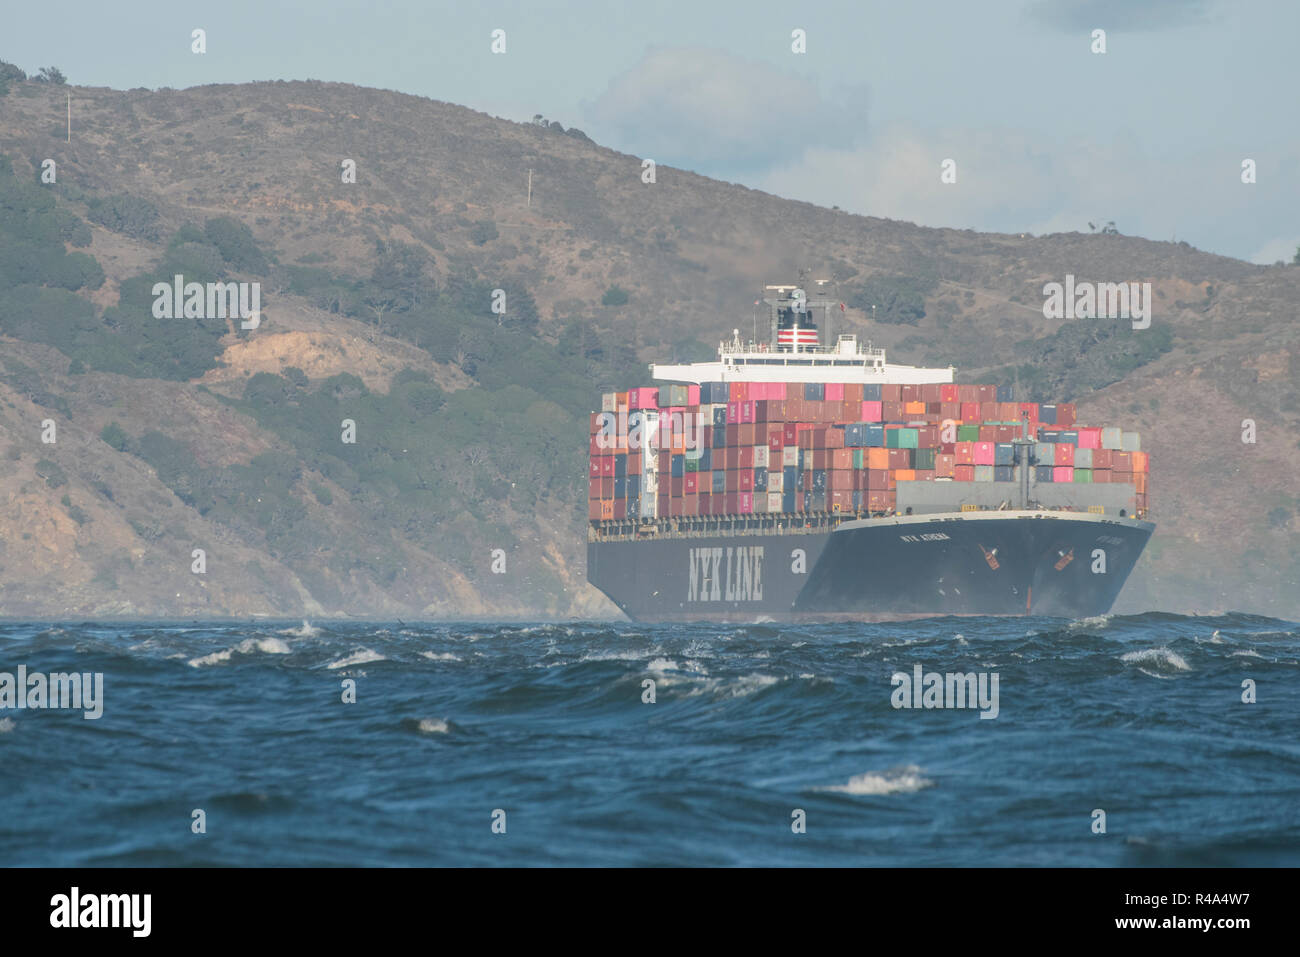 Un cargo chargé de conteneurs d'expédition traverse la baie de San Francisco. Banque D'Images